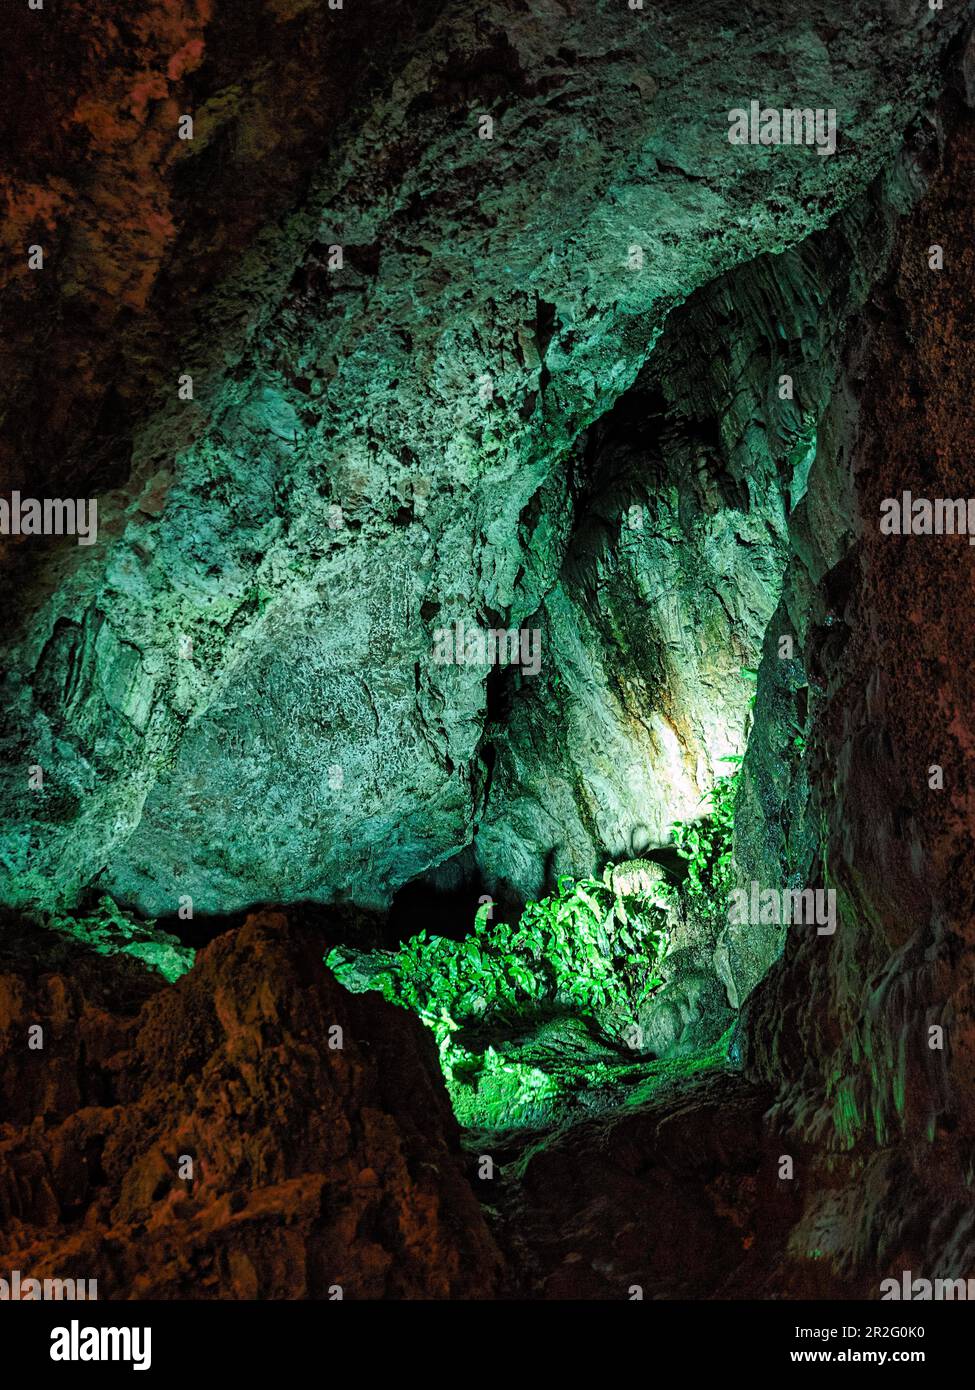 Beleuchtete Wände mit grünen Algen in Kalksteinhöhlen, Smoo Cave, Durness, Sutherland, Schottland, Vereinigtes Königreich Stockfoto